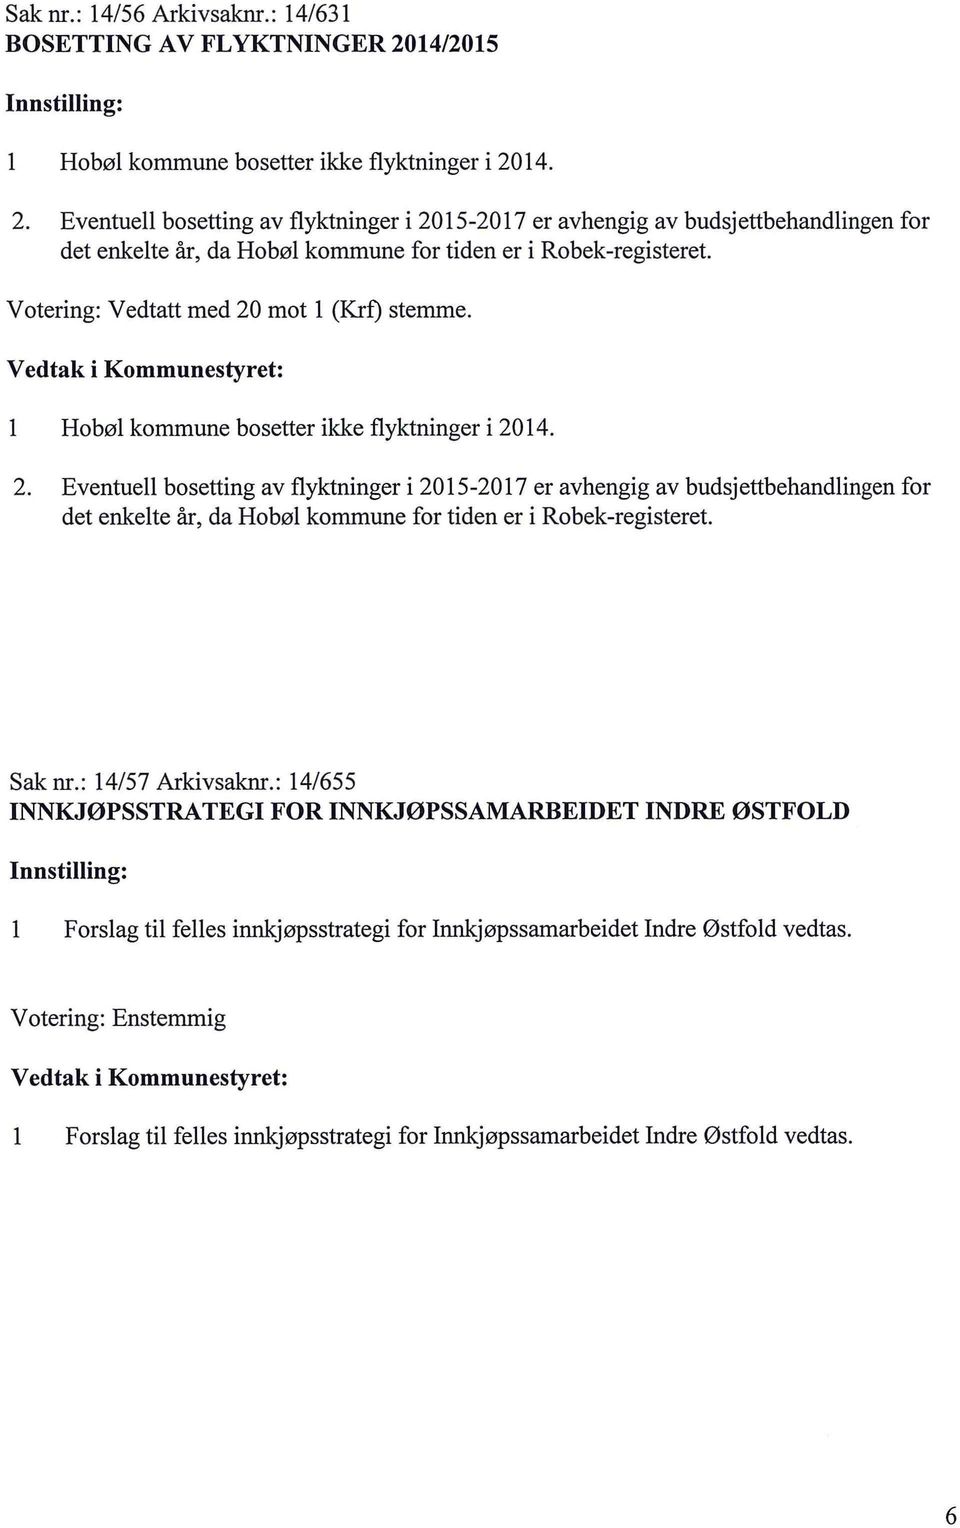 14. 2. Eventue bosetting av fyktninger i 2015-2017 er avhengig av budsjettbehandingen for det enkete år, da Hobø kommune for tiden er i Robek-registeret.